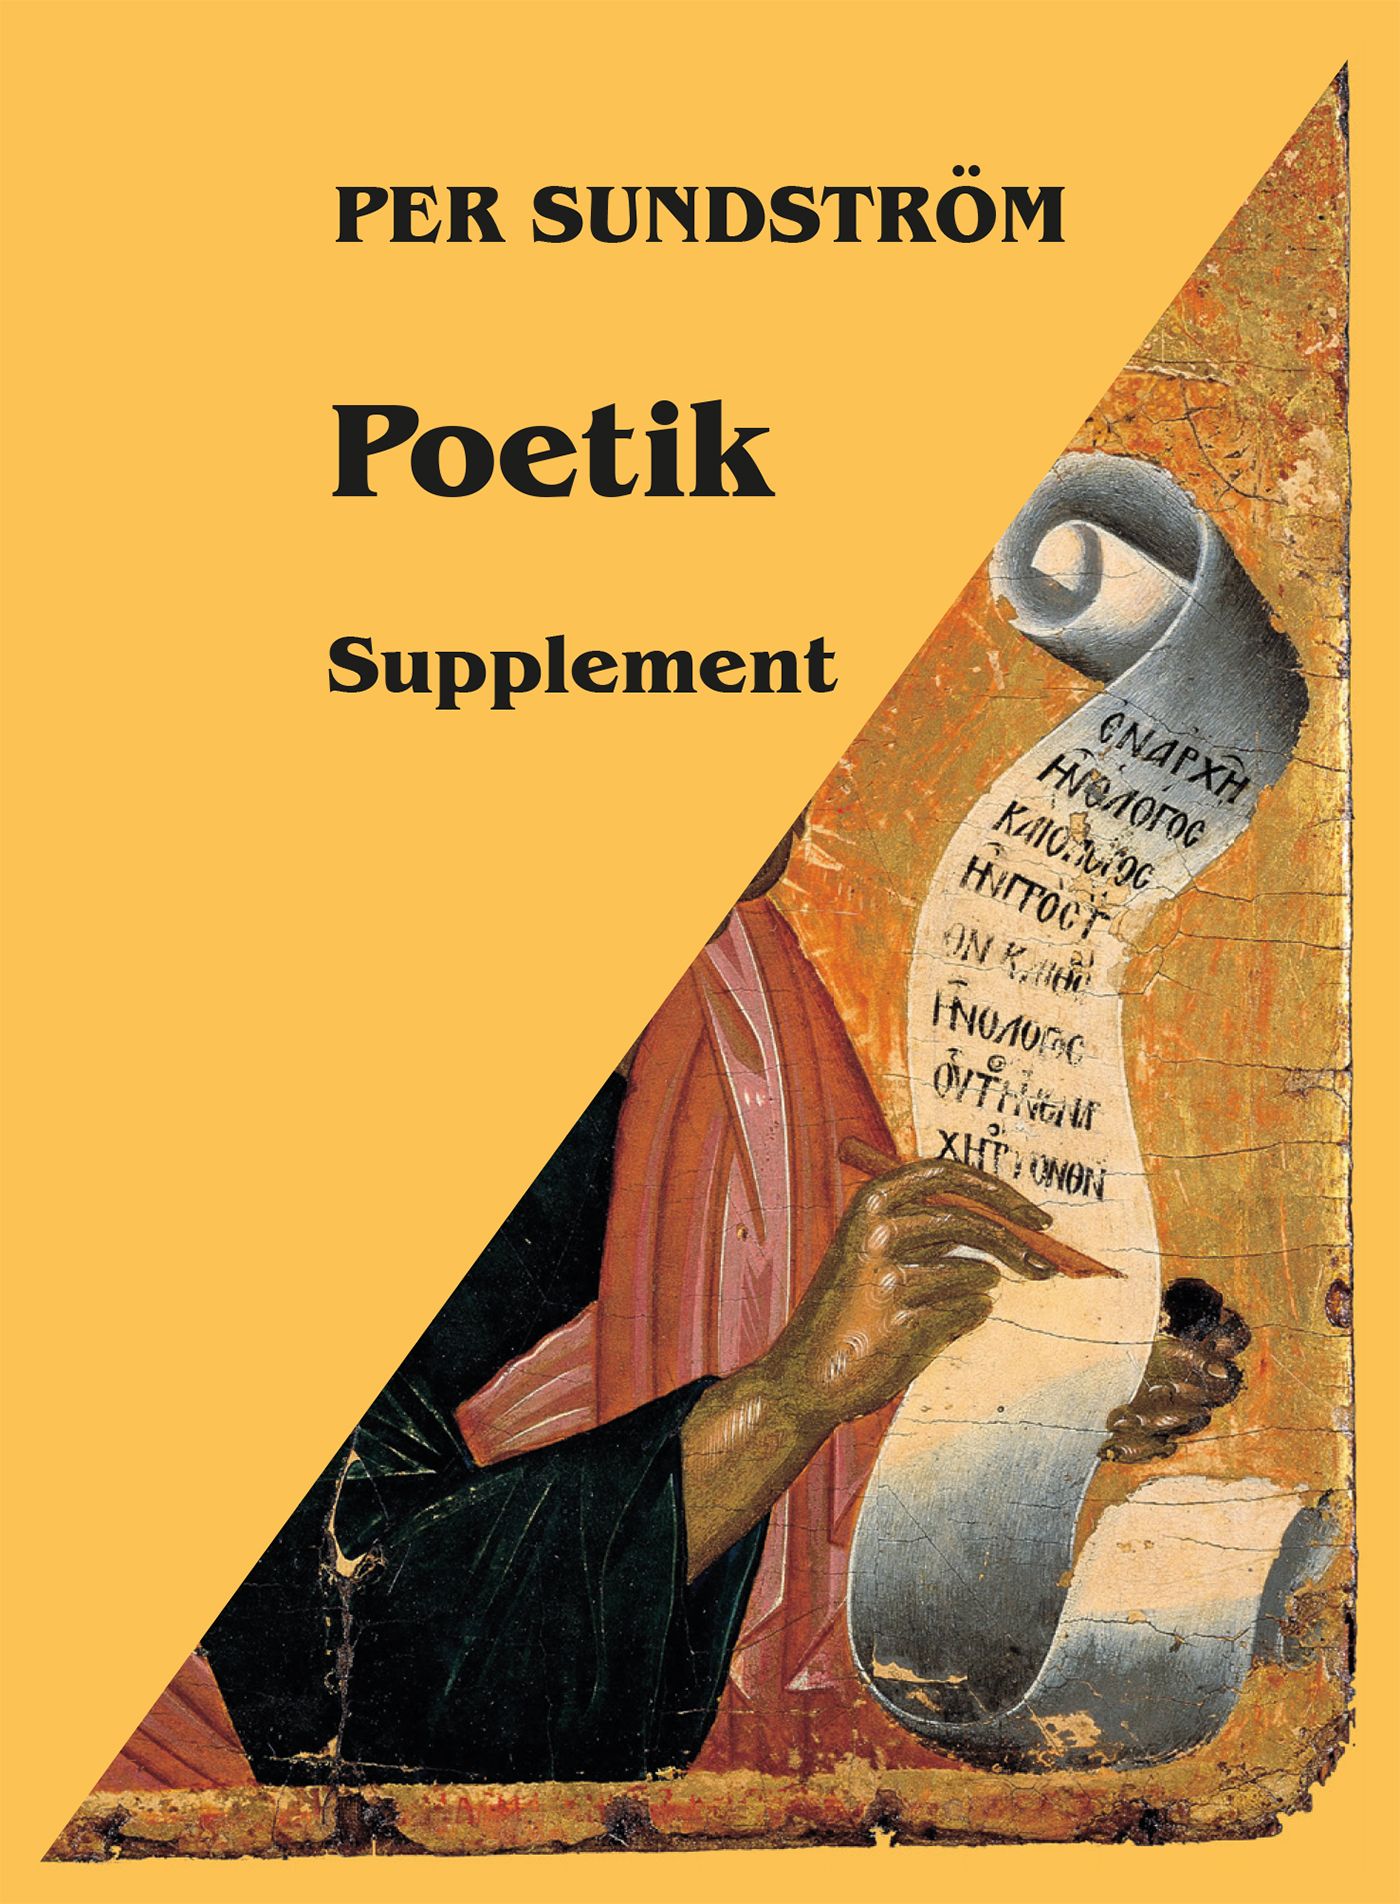 Poetik : Supplement, e-bok av Per Sundström